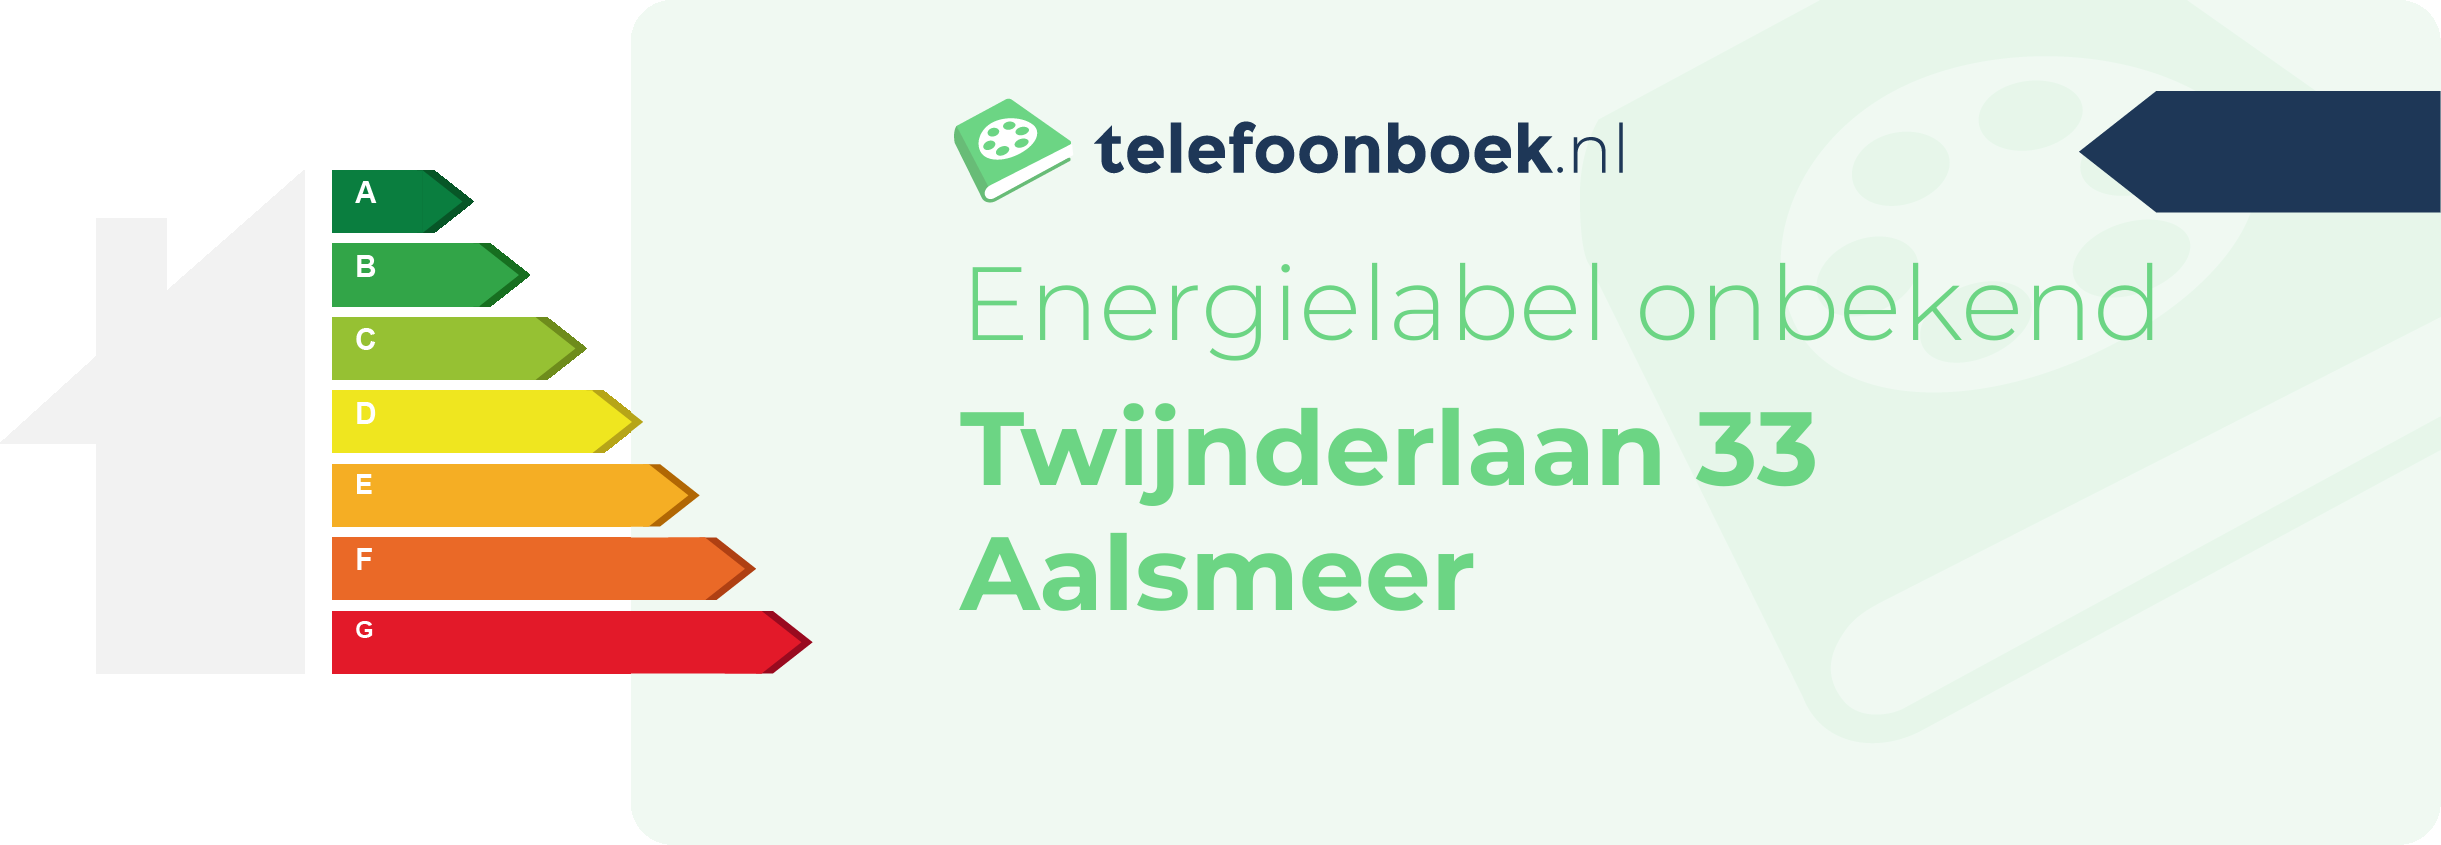 Energielabel Twijnderlaan 33 Aalsmeer